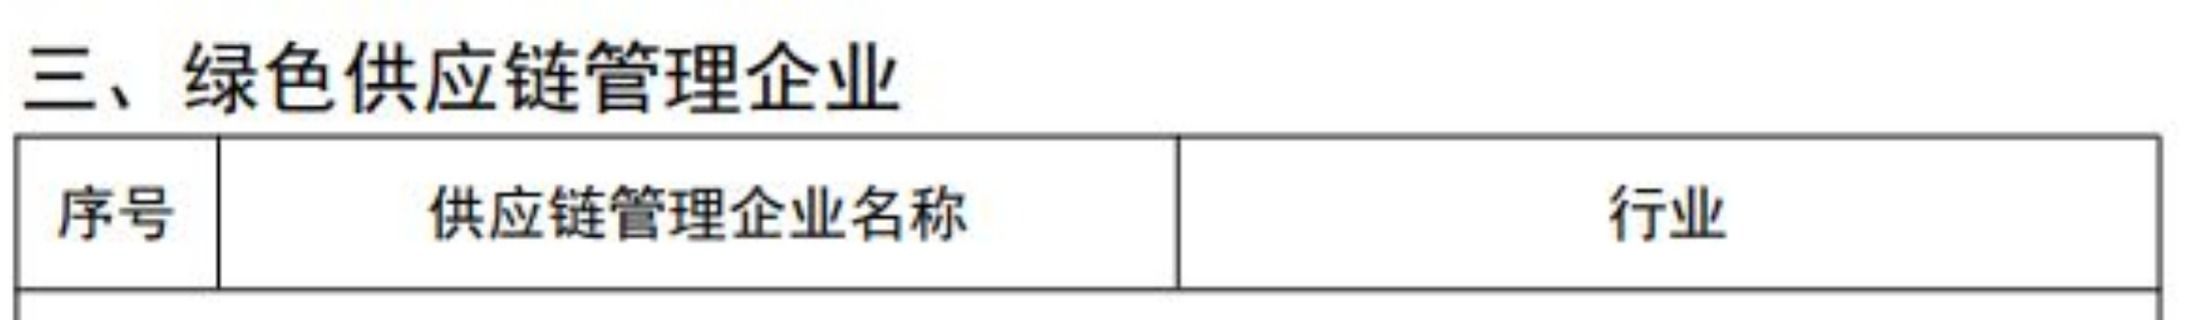 东阿阿胶股份有限公司被列入2023年省级绿色制造名单